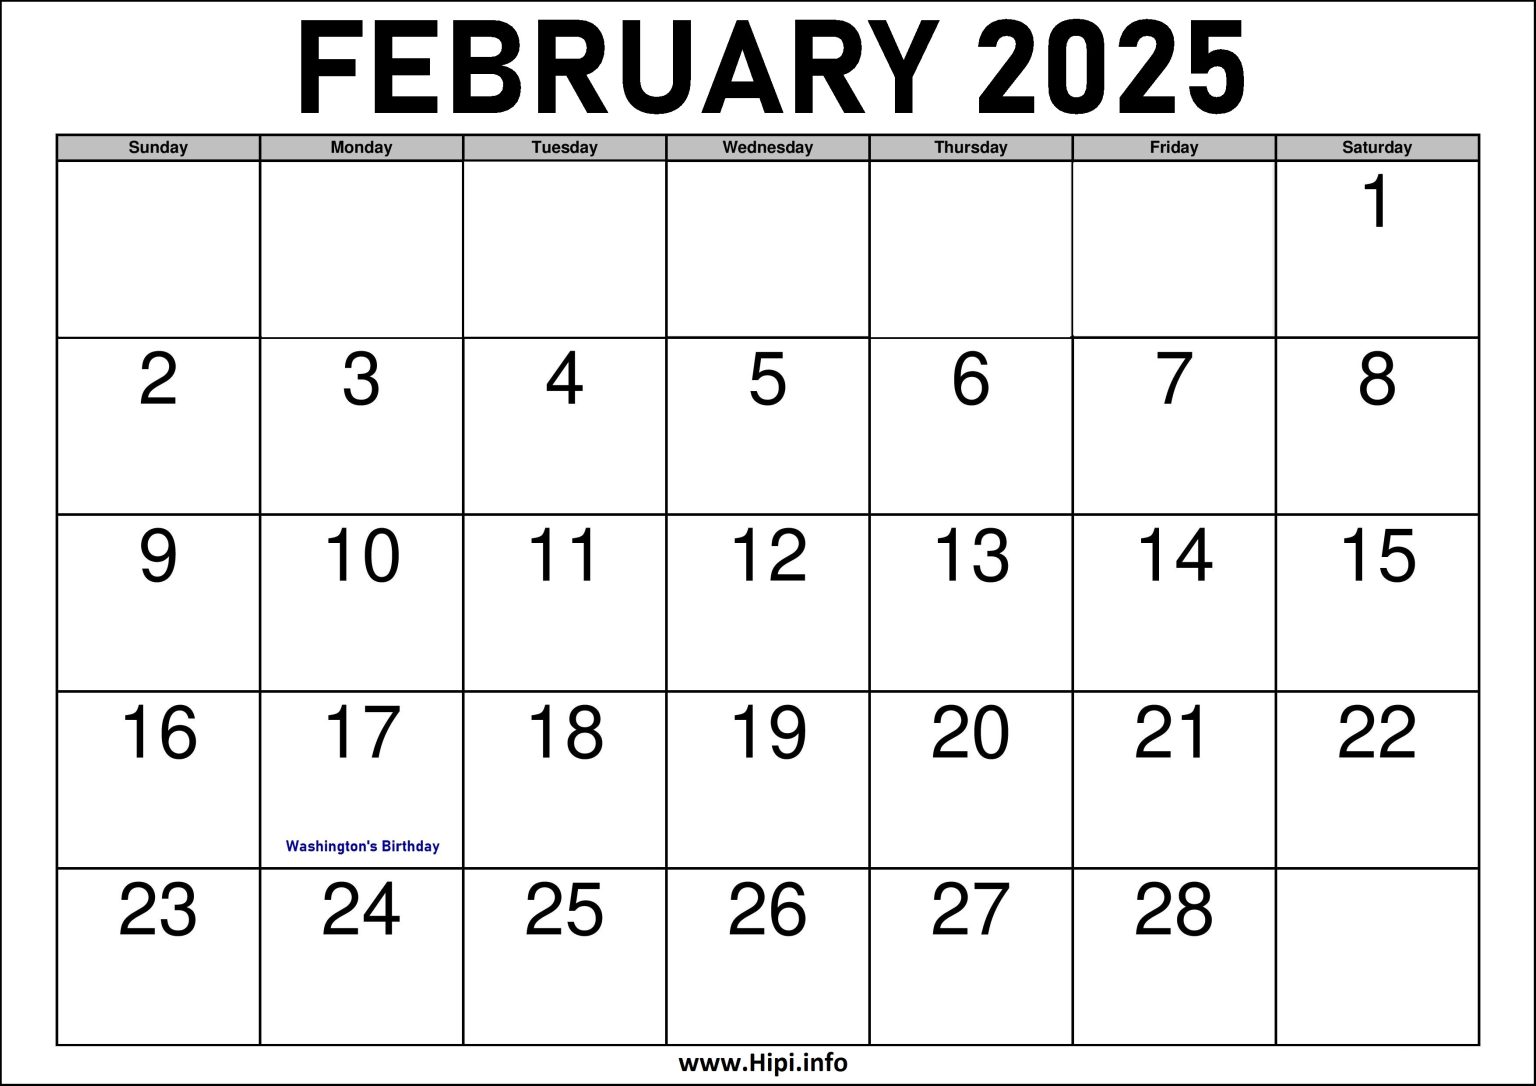 2025 February Calendar Printable with Holidays Hipi.info